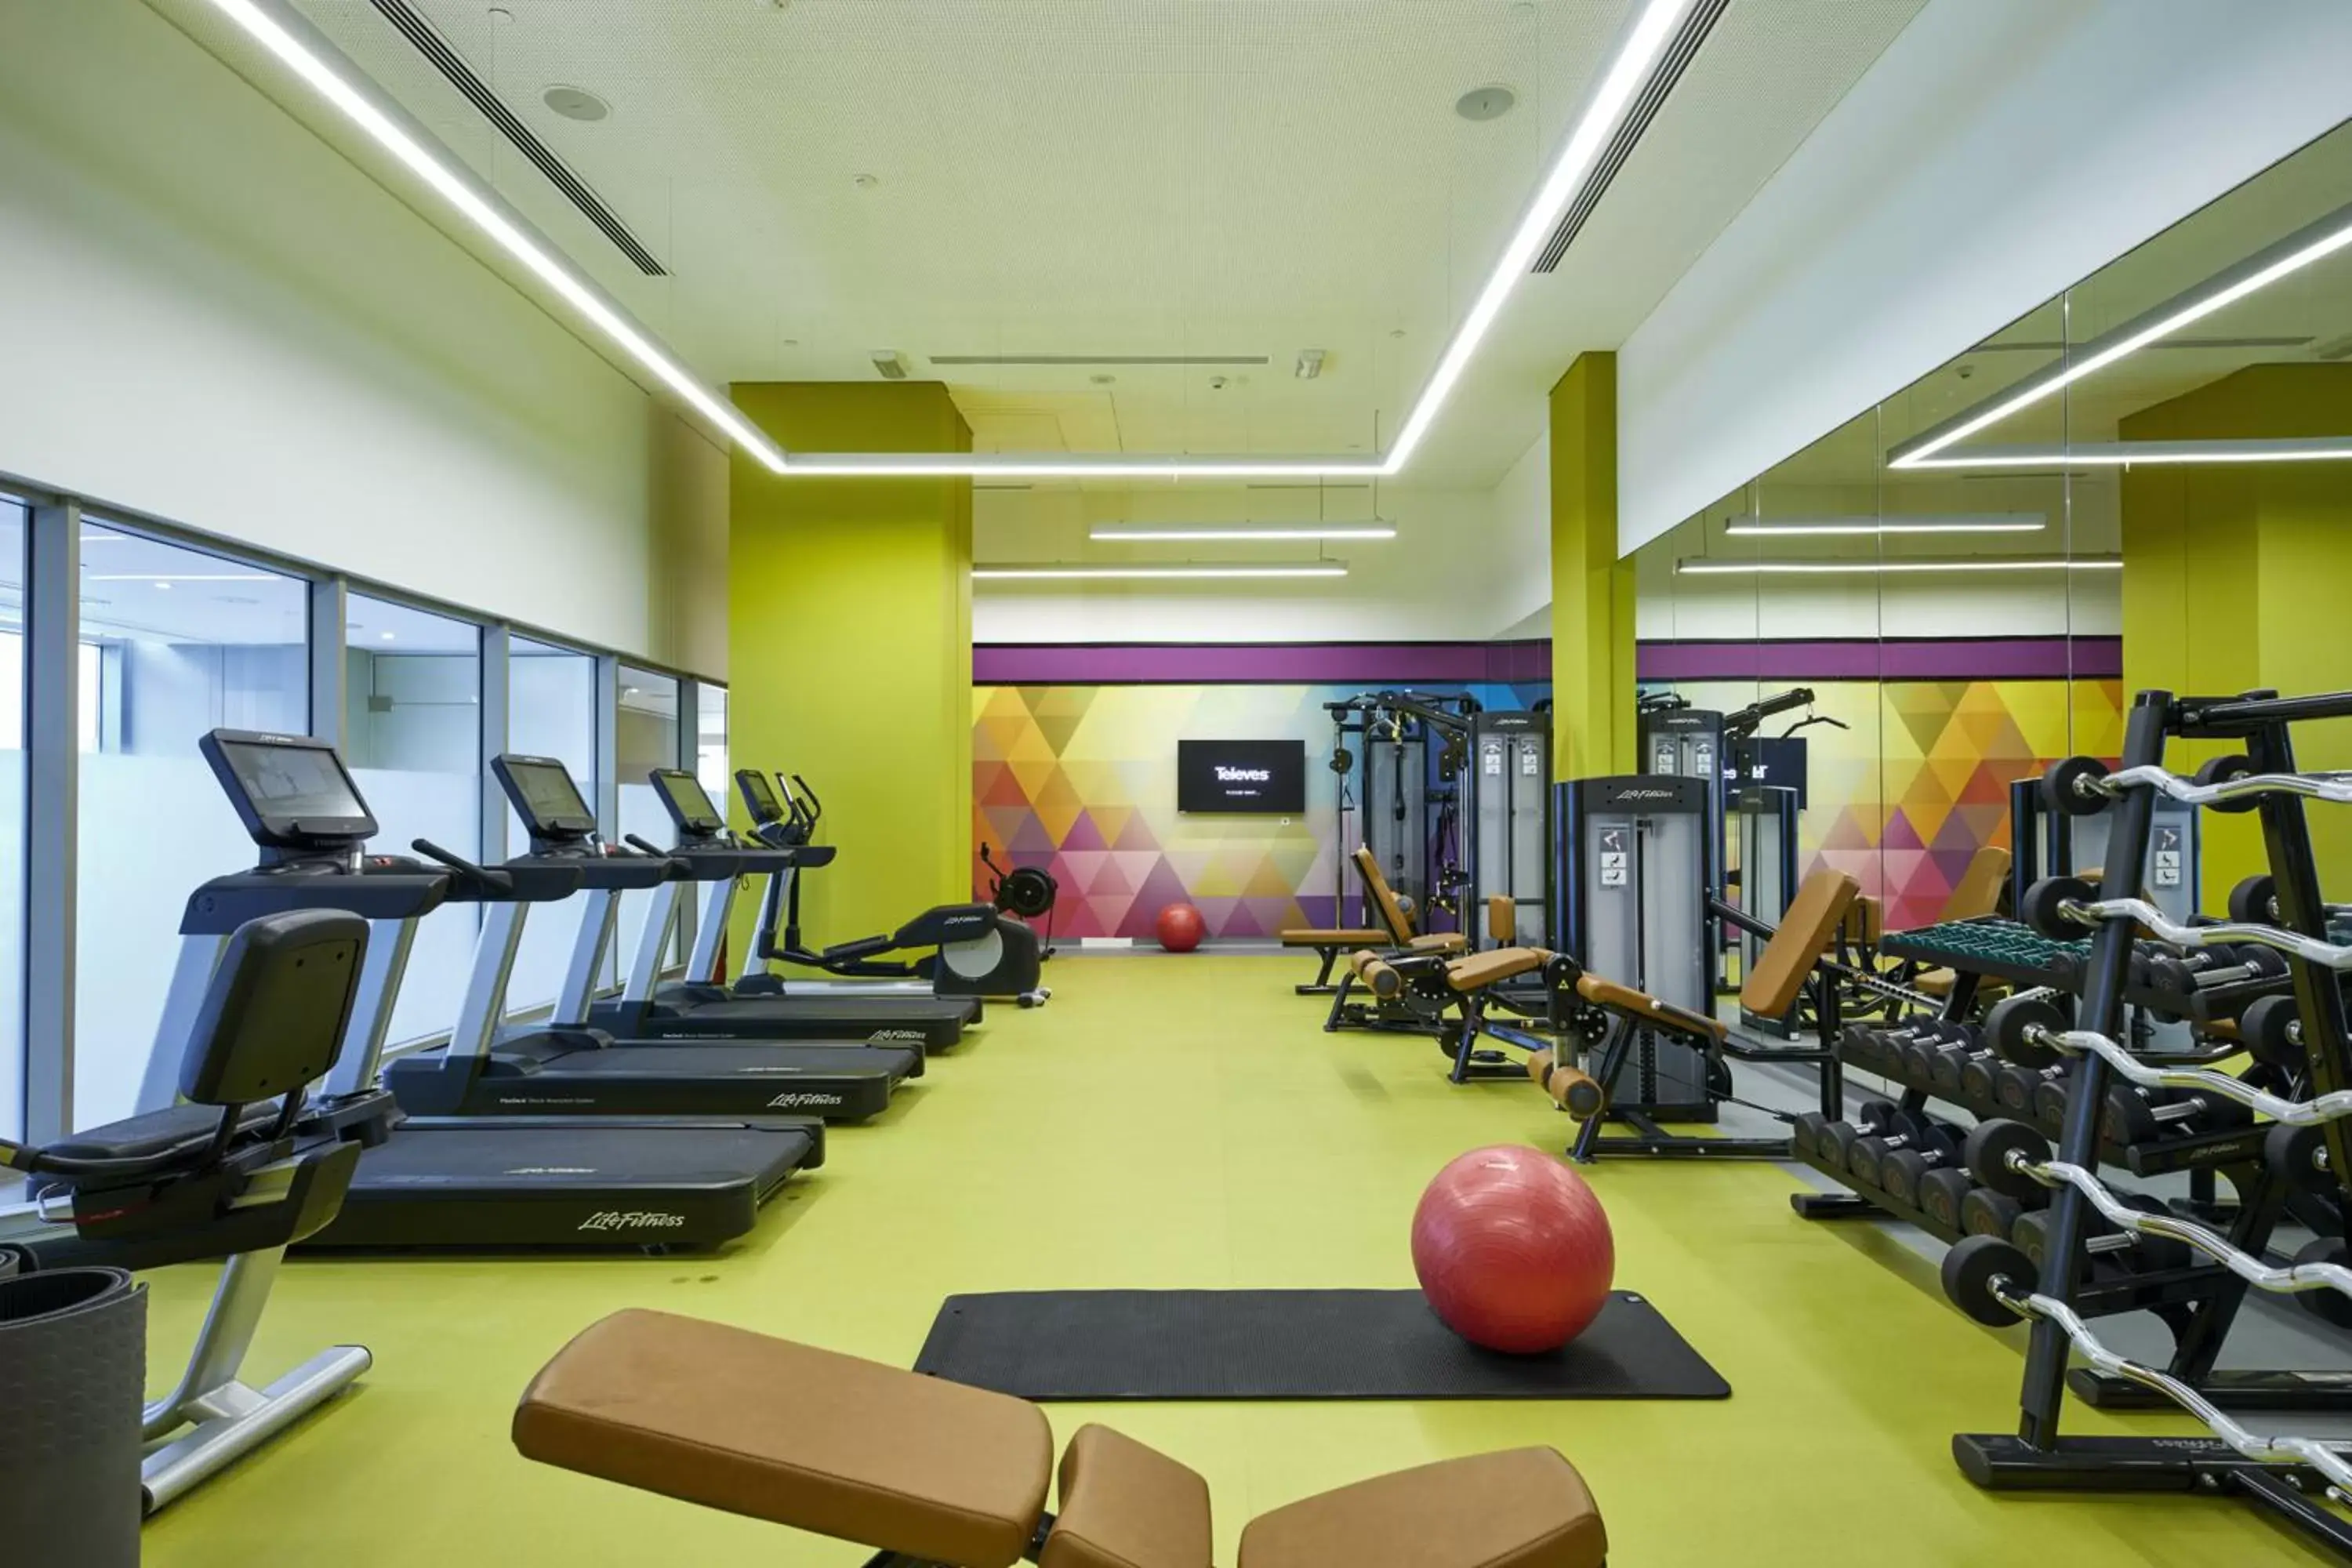 Fitness centre/facilities, Fitness Center/Facilities in Riu Dubai Beach Resort - All Inclusive